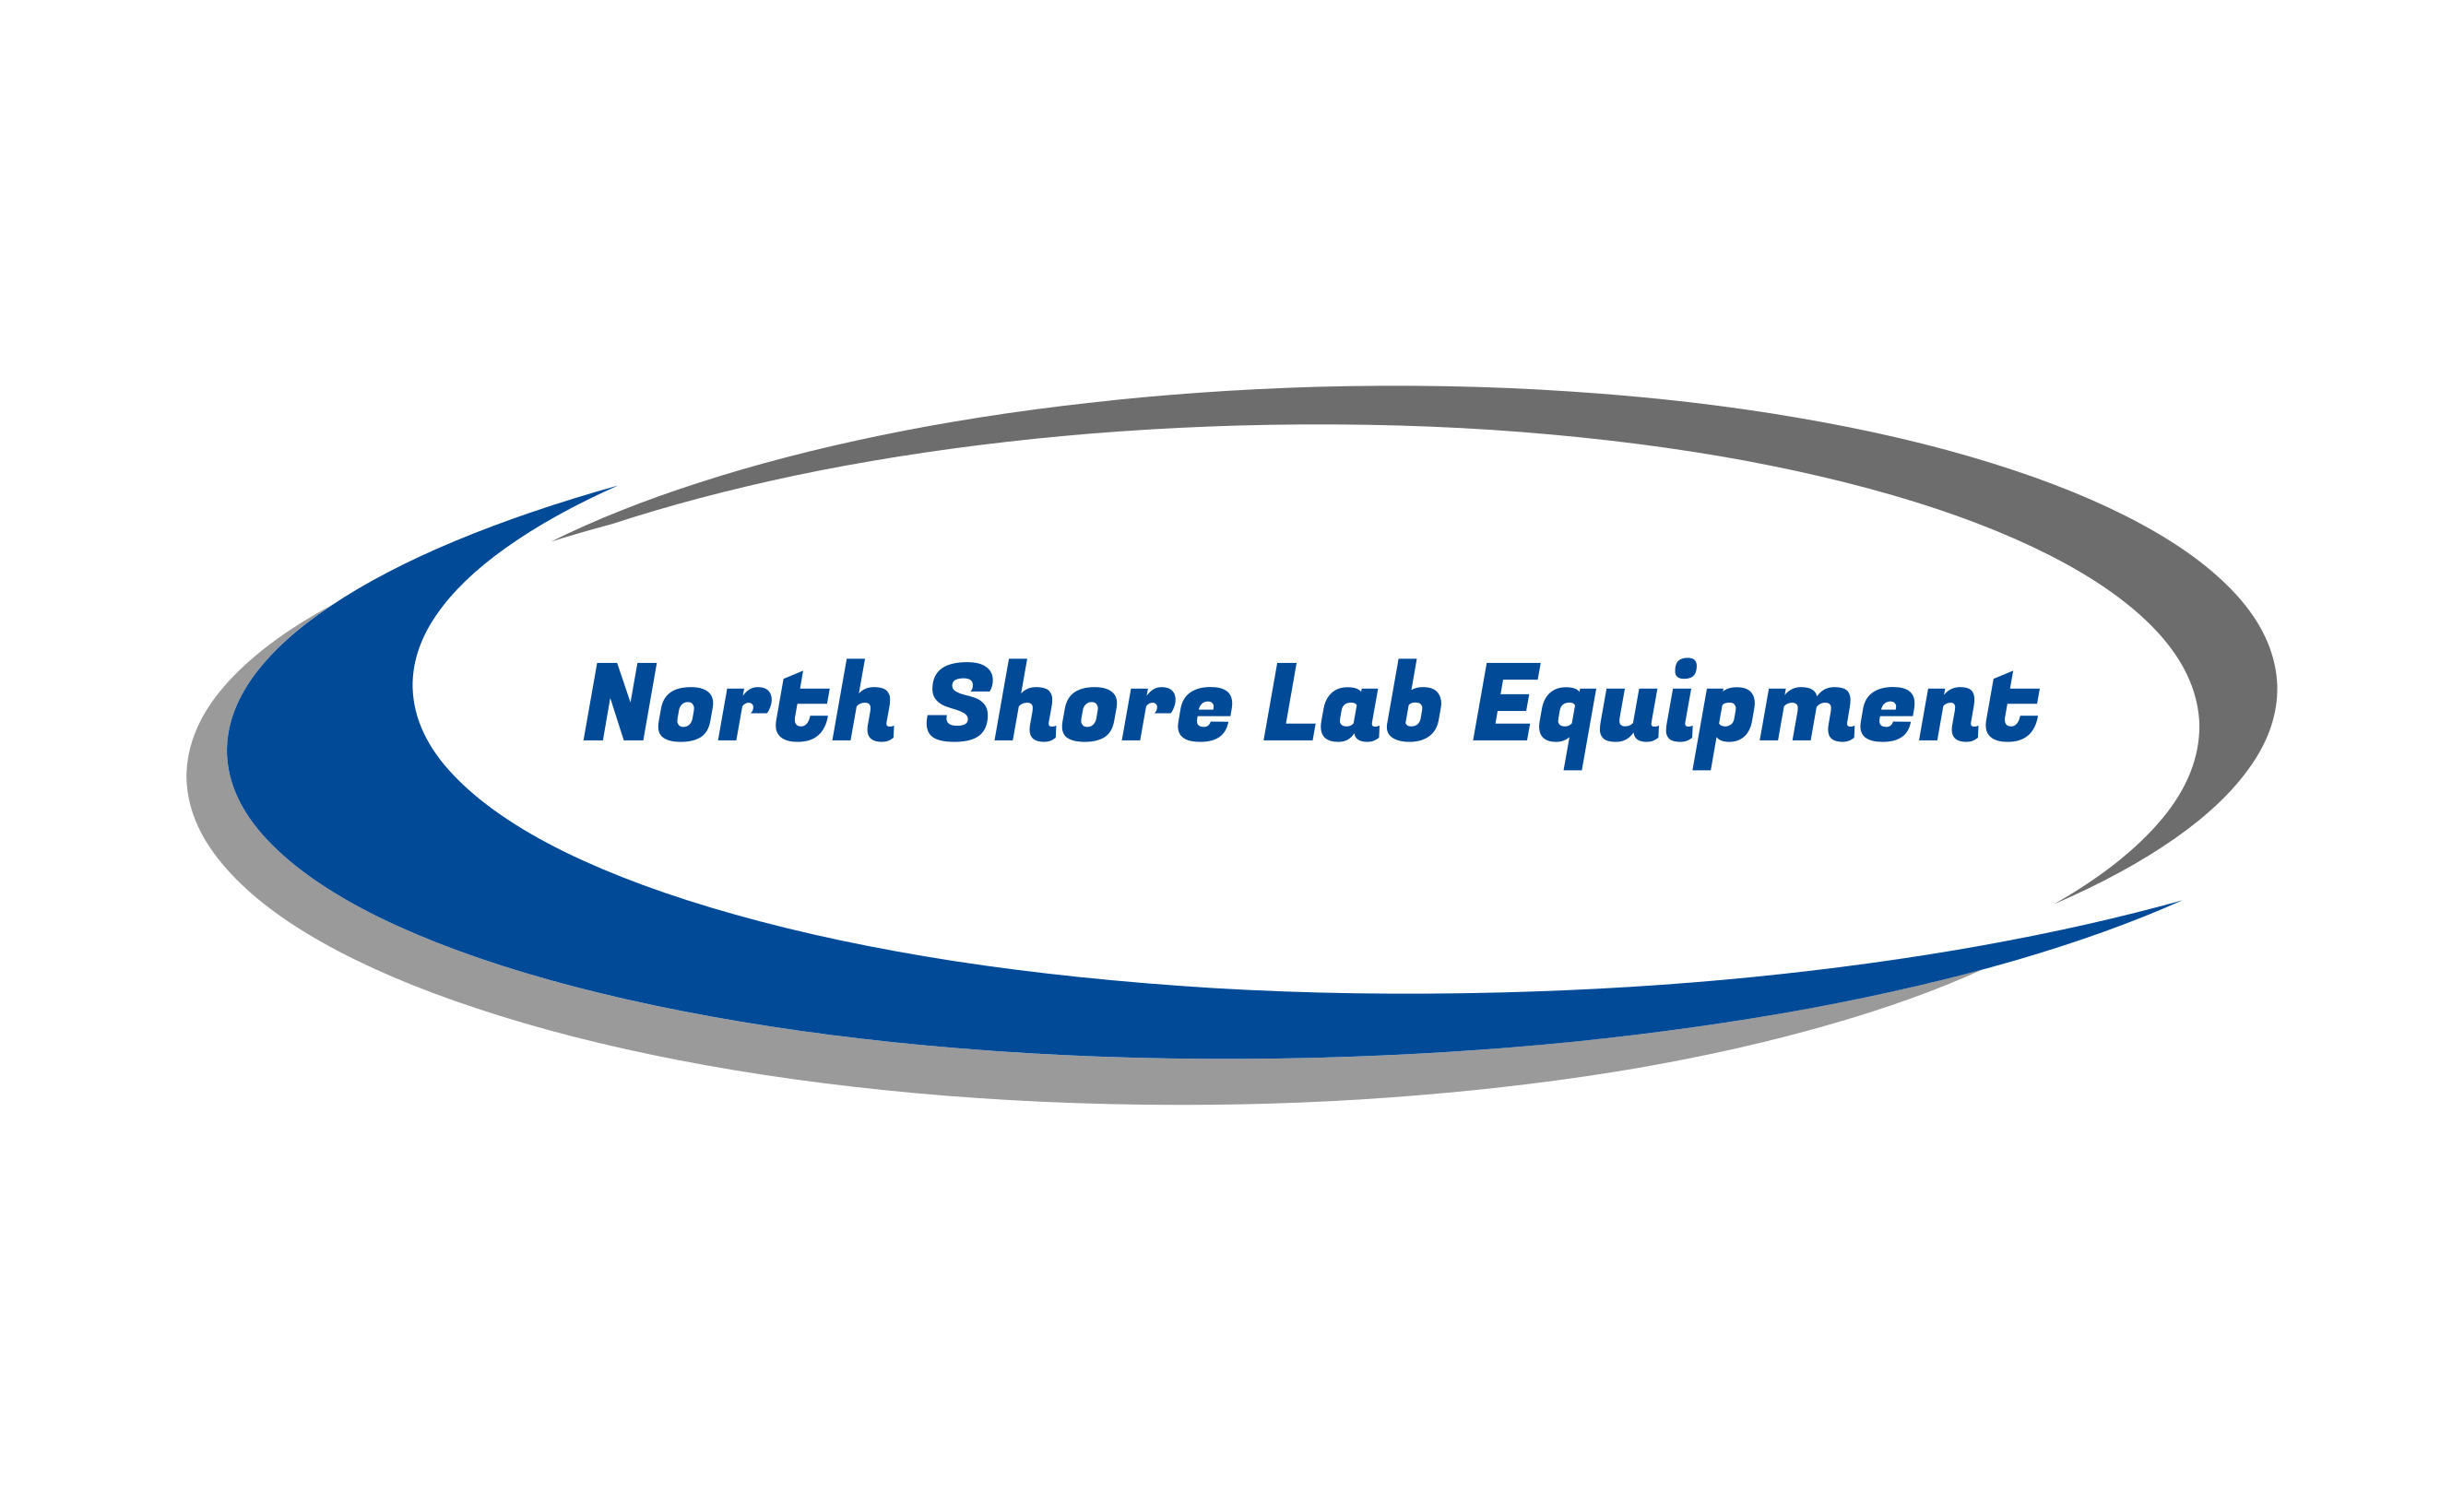 North shore Lab Equipment